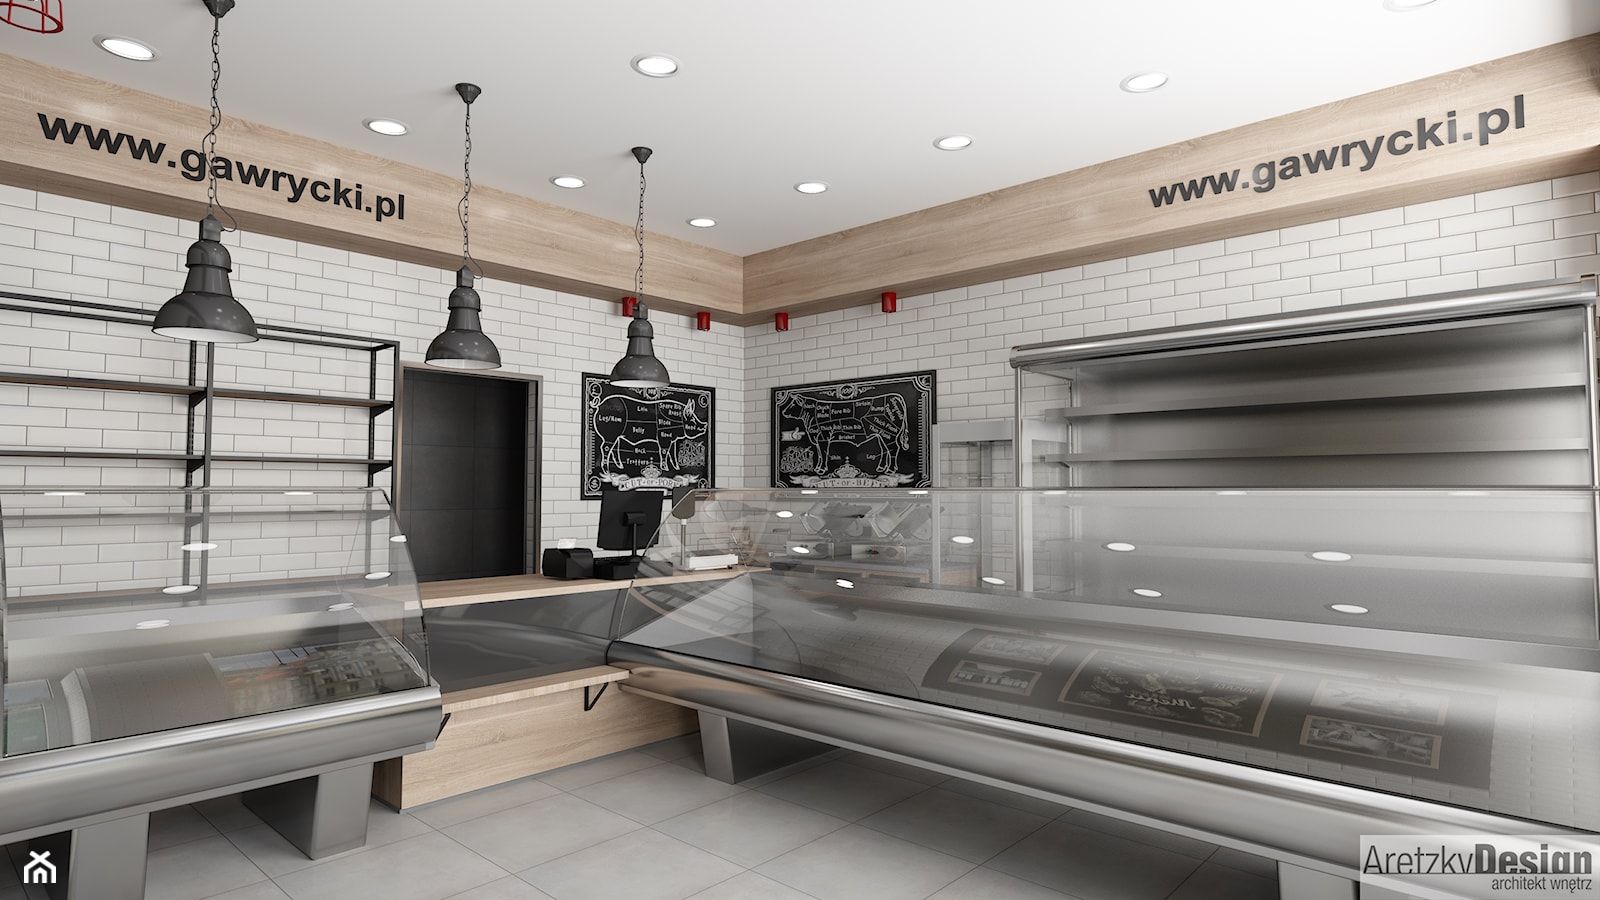 Projekt sklepu mięsnego U01_2018 Bielawa - Wnętrza publiczne, styl industrialny - zdjęcie od Aretzky Design - Homebook